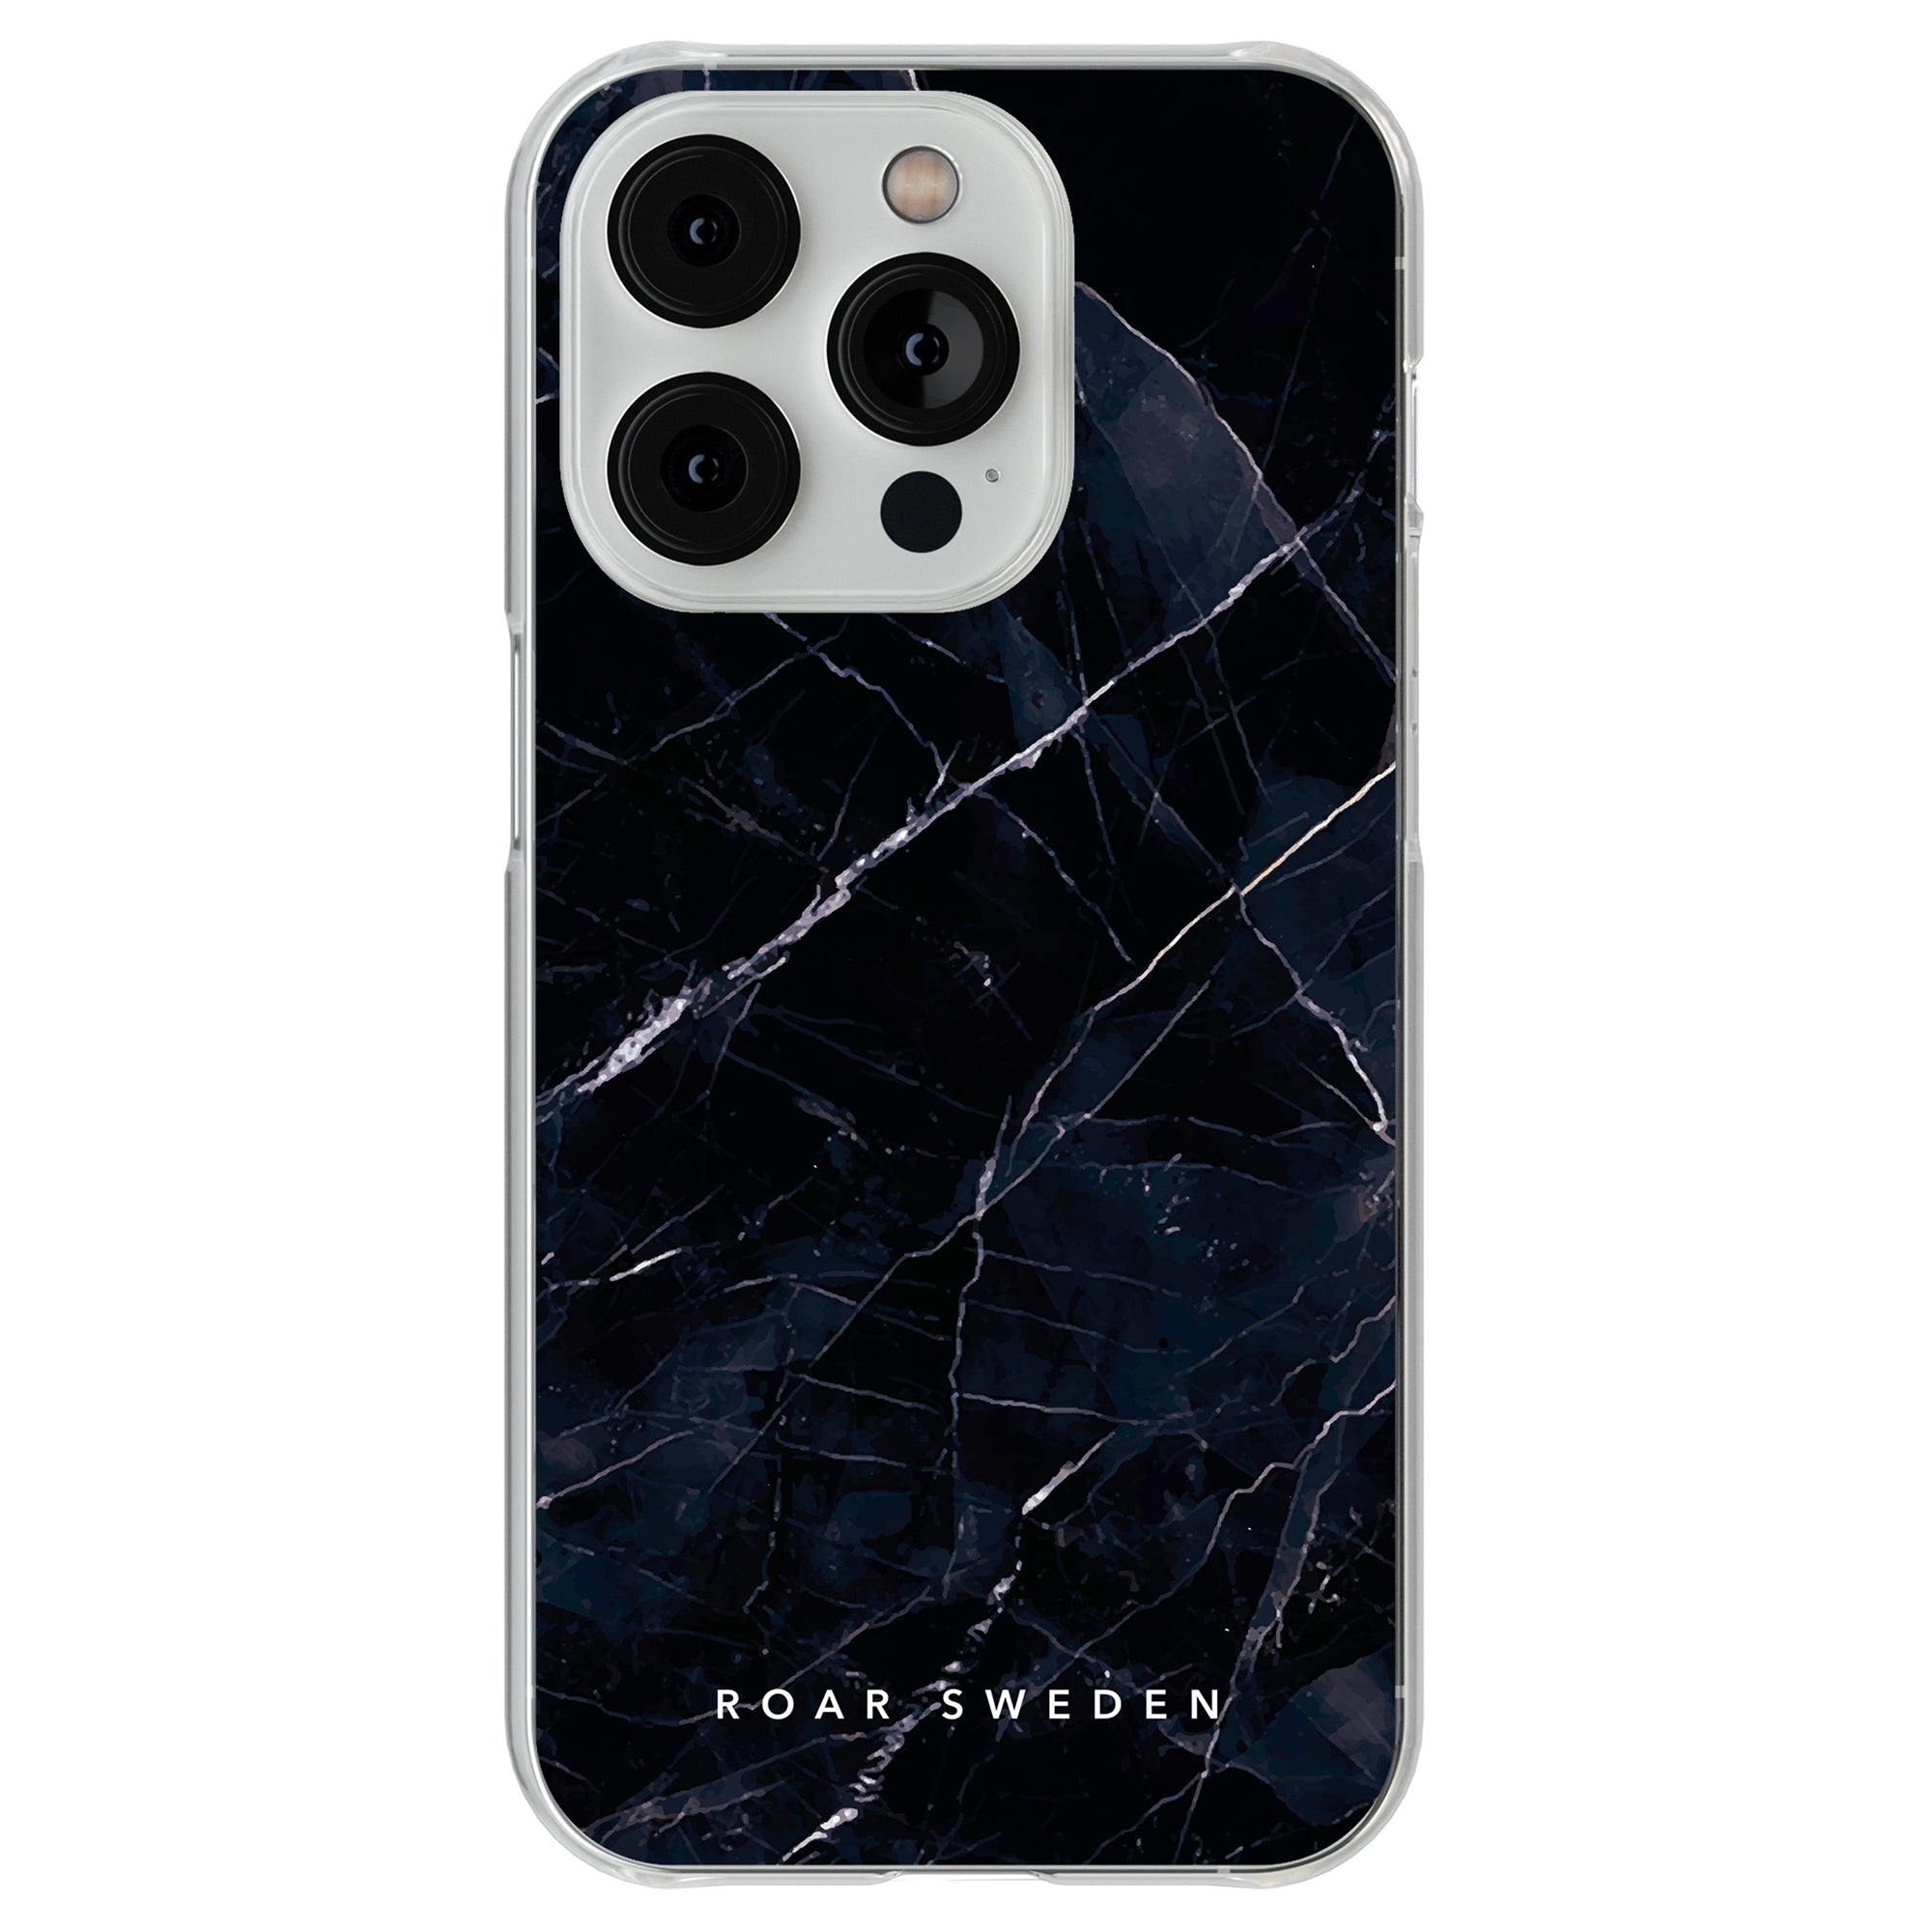 Ett Nero - Clear Case telefonfodral för iPhone 11 Pro.